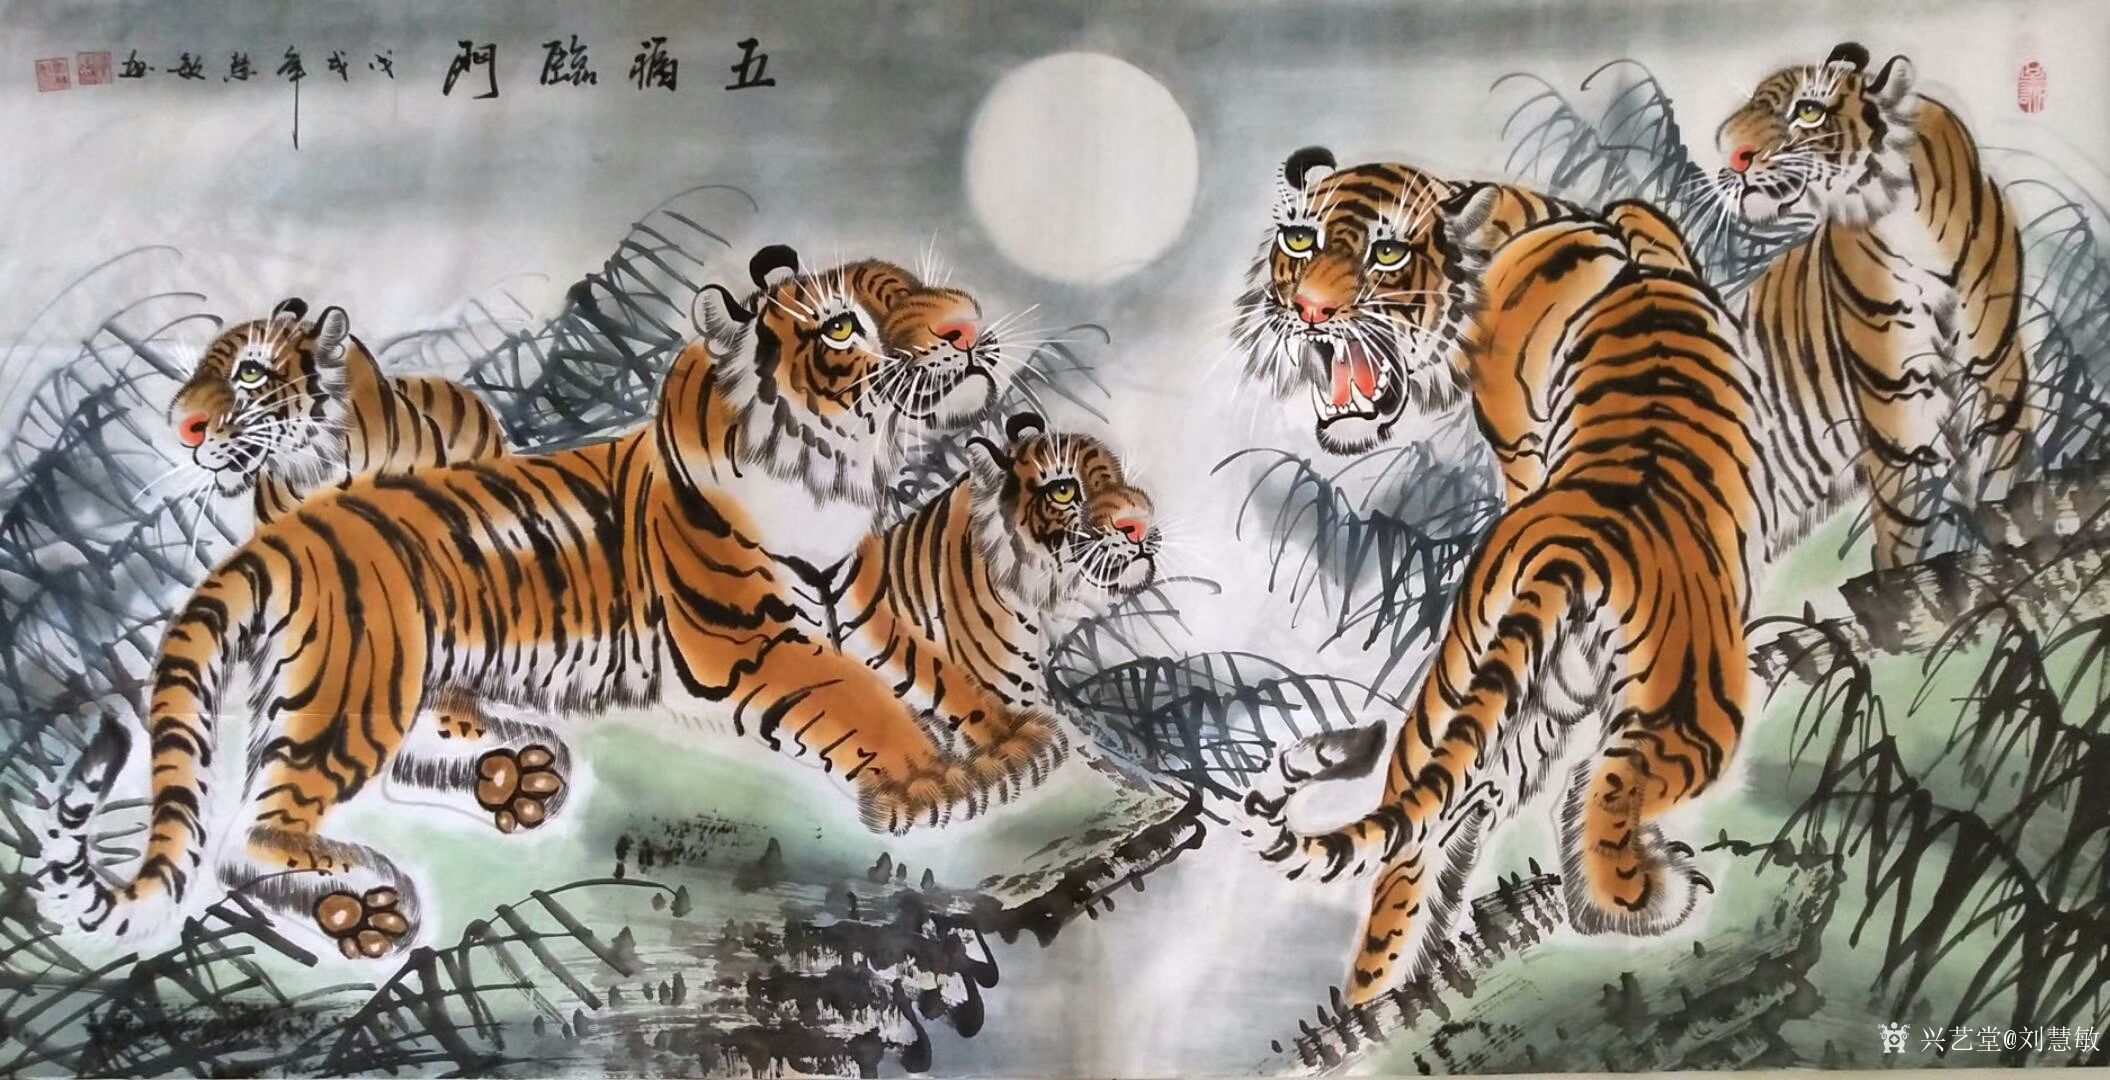 艺术家刘慧敏日记:国画动物画老虎系列《五福临门》,三幅手工绘制